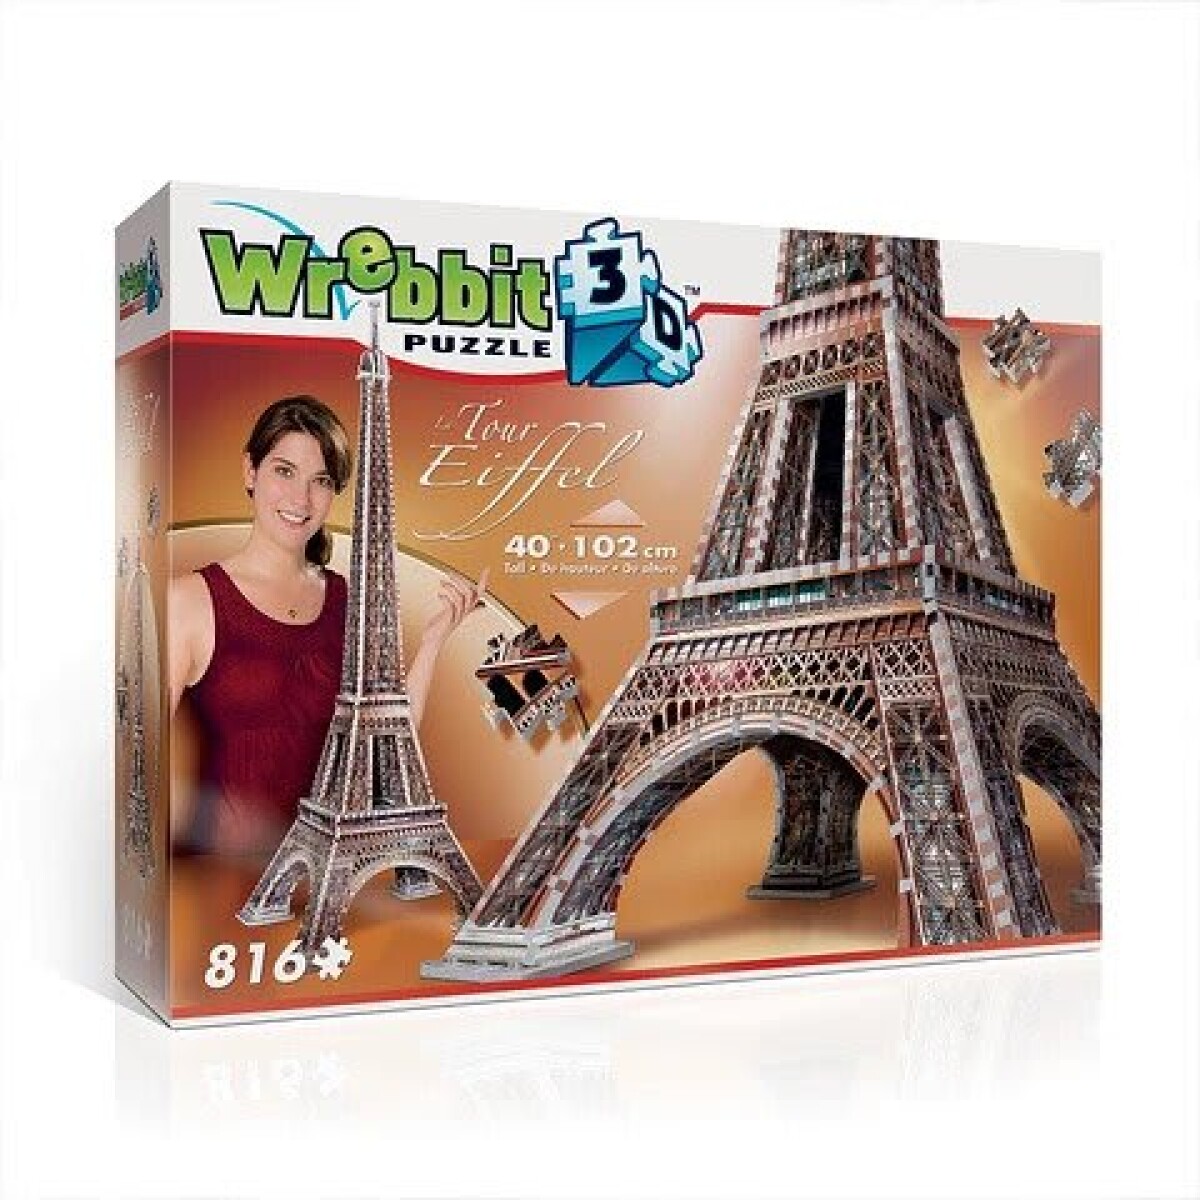 Puzzle Wrebbit 3D Torre Eiffel 816 Piezas - 001 